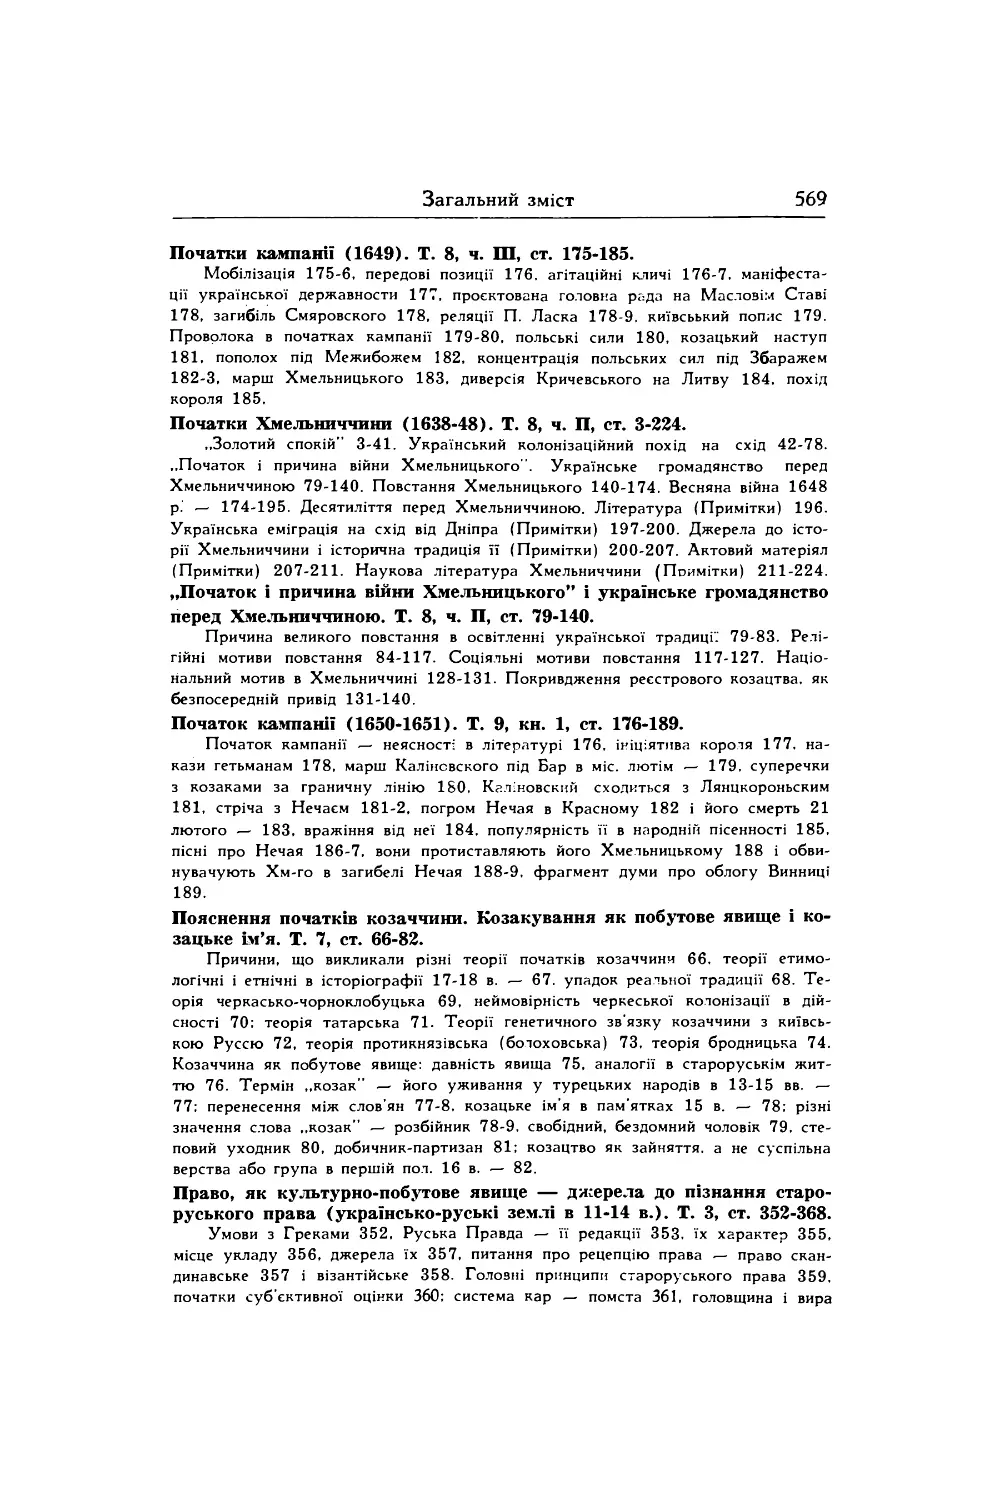 Пояснення початків козаччини. Козакування як побутове явище і козацьке ім’я. Т. 7, ст. 66-82.